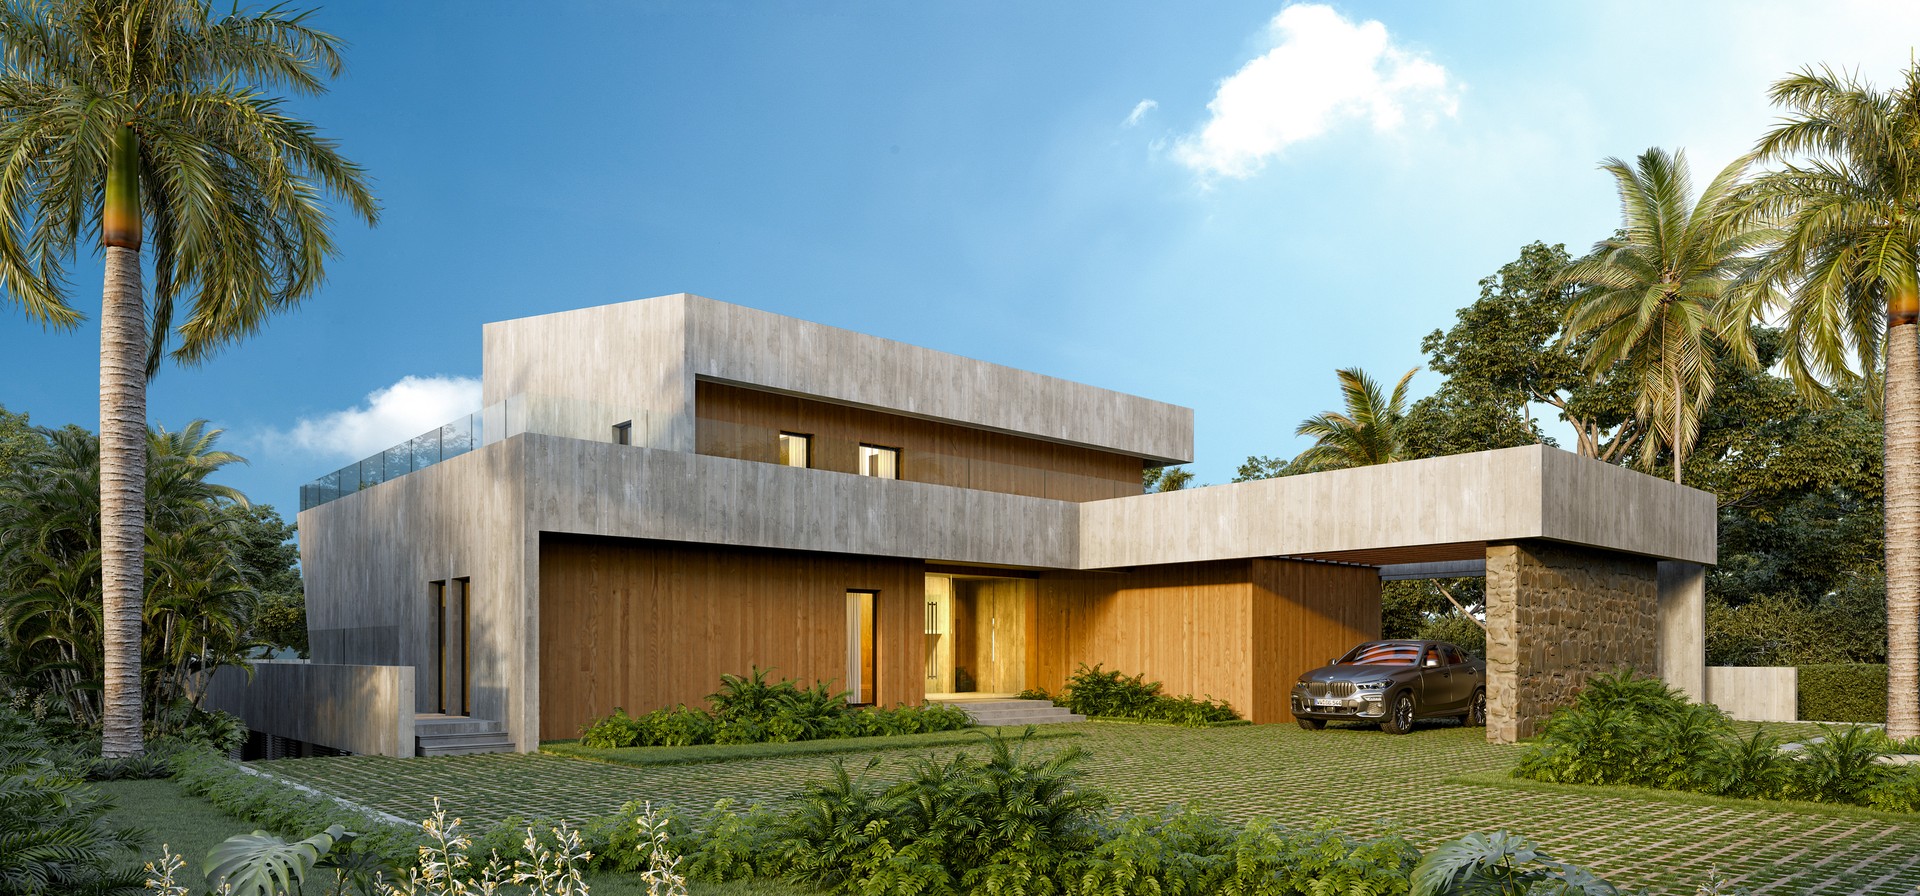 casas vacacionales y villas - Villas modernas disponible en Cap Cana con 6 habitaciones 6 baños  6